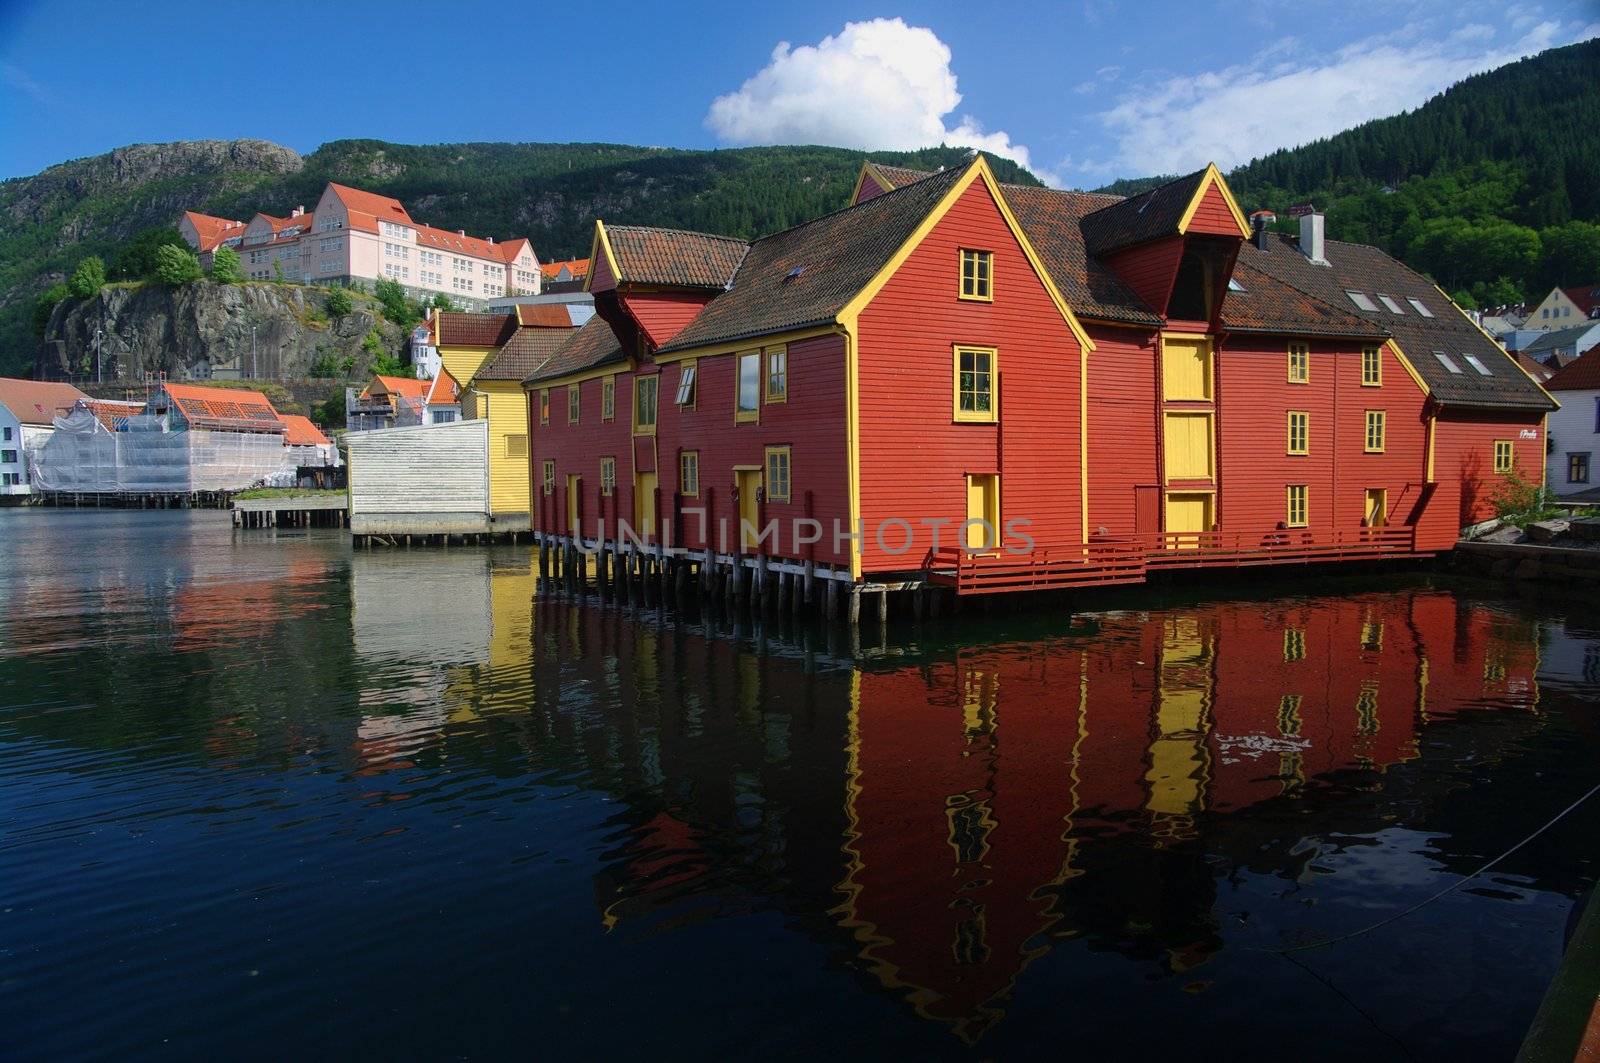 Old, Harbor-side wooden buildings. Bergen, Norway